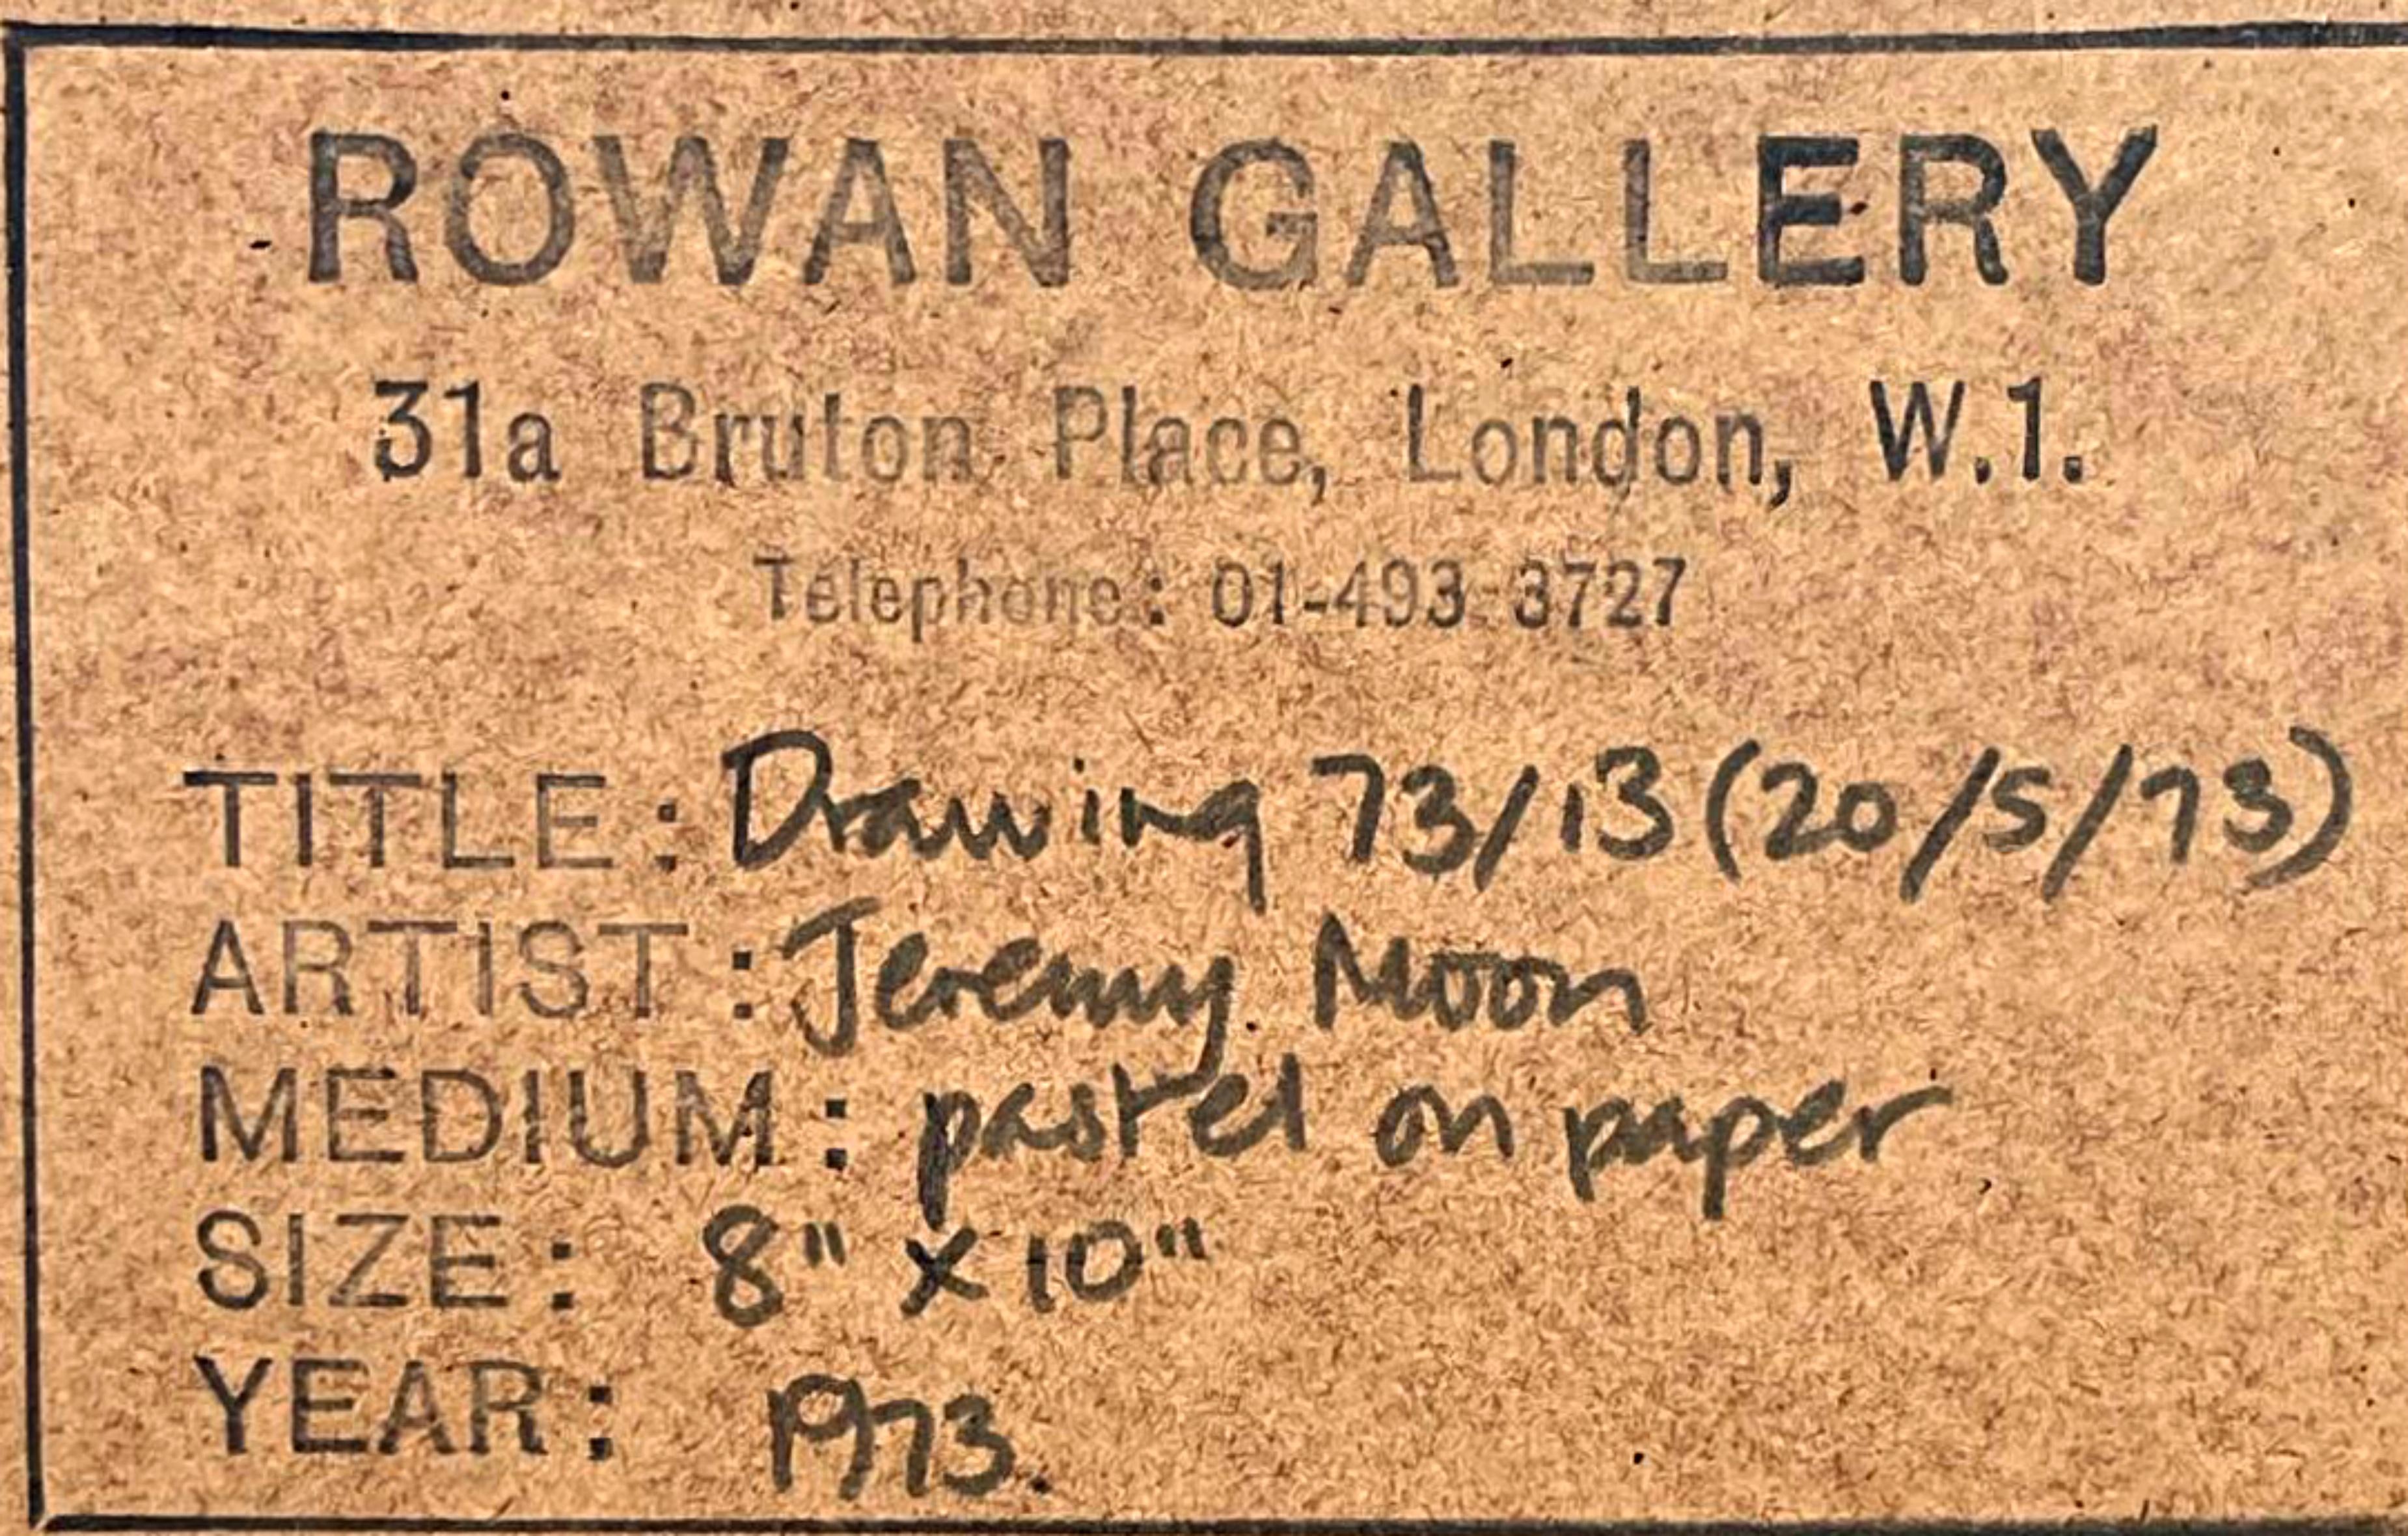 Jeremy Mond
Zeichnung 73/13 (20/5/73), 1973
Pastell auf Papier
Handsigniert vom Künstler, signiert und datiert 20/5/73 in Graphit auf der unteren Vorderseite; die Rückseite des Vintage-Rahmens trägt das originale Rowan Gallery Label mit